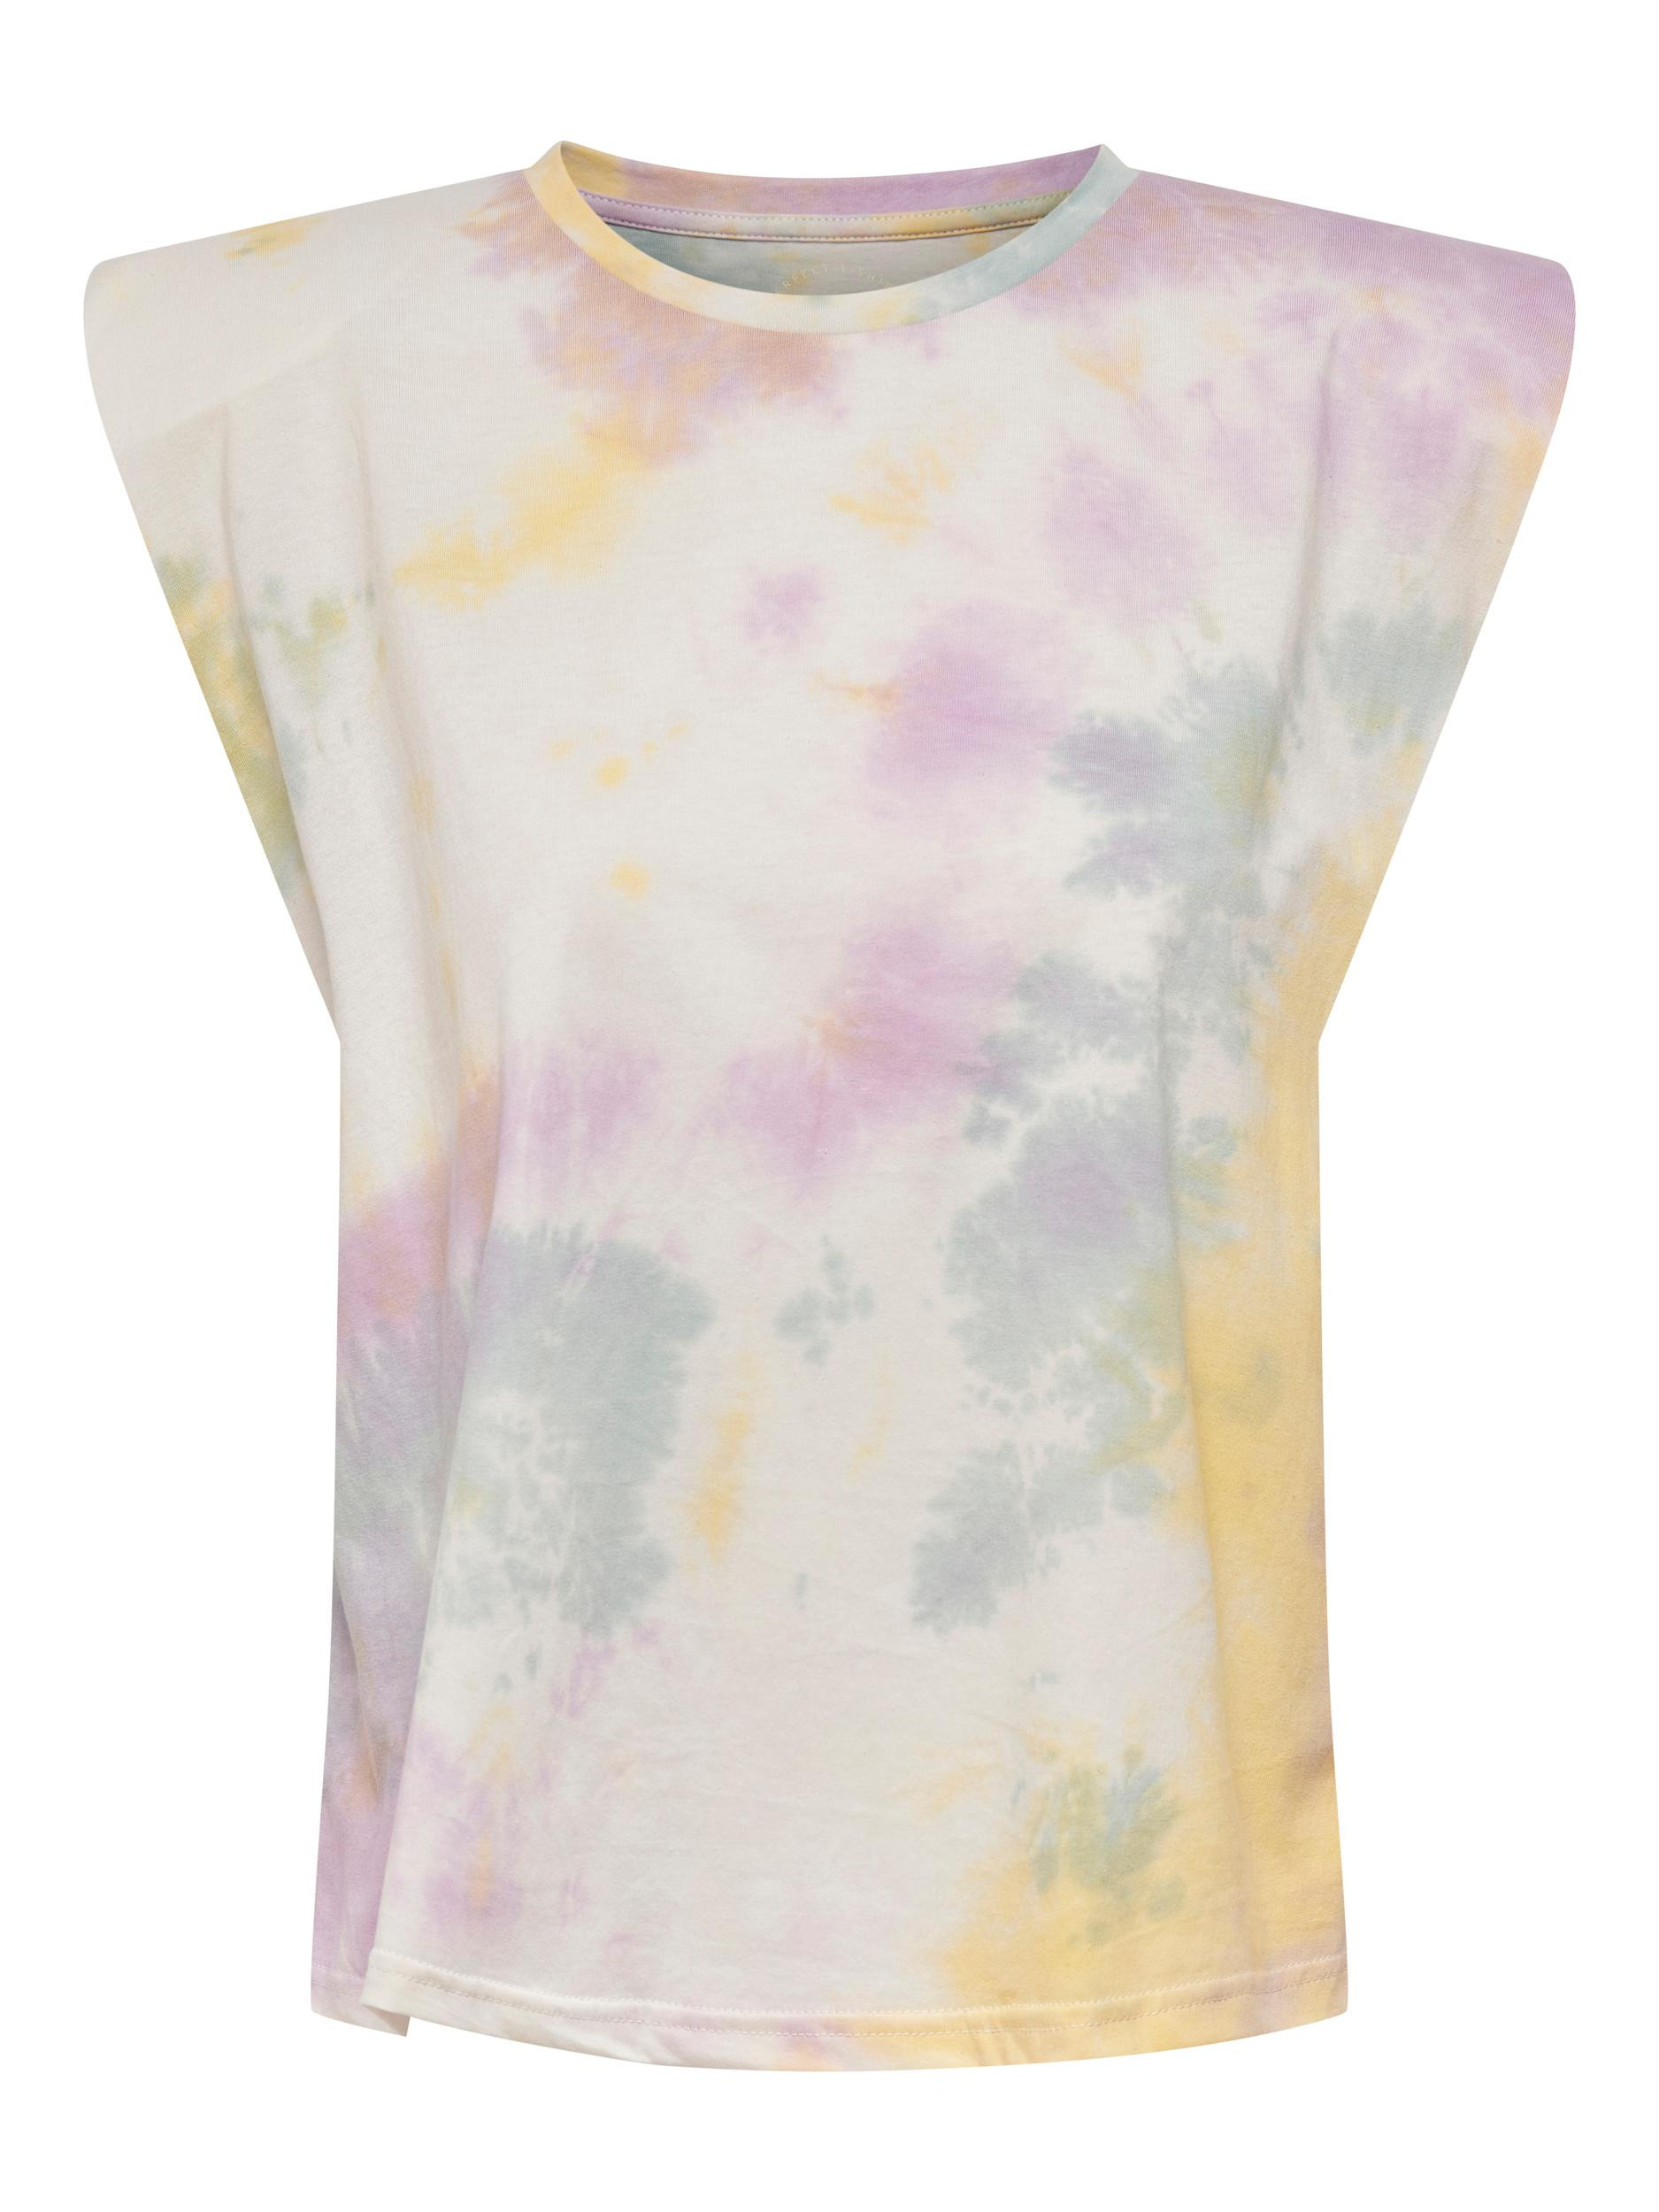 T-shirt con stampa effetto  acquerello, Multicolor, large